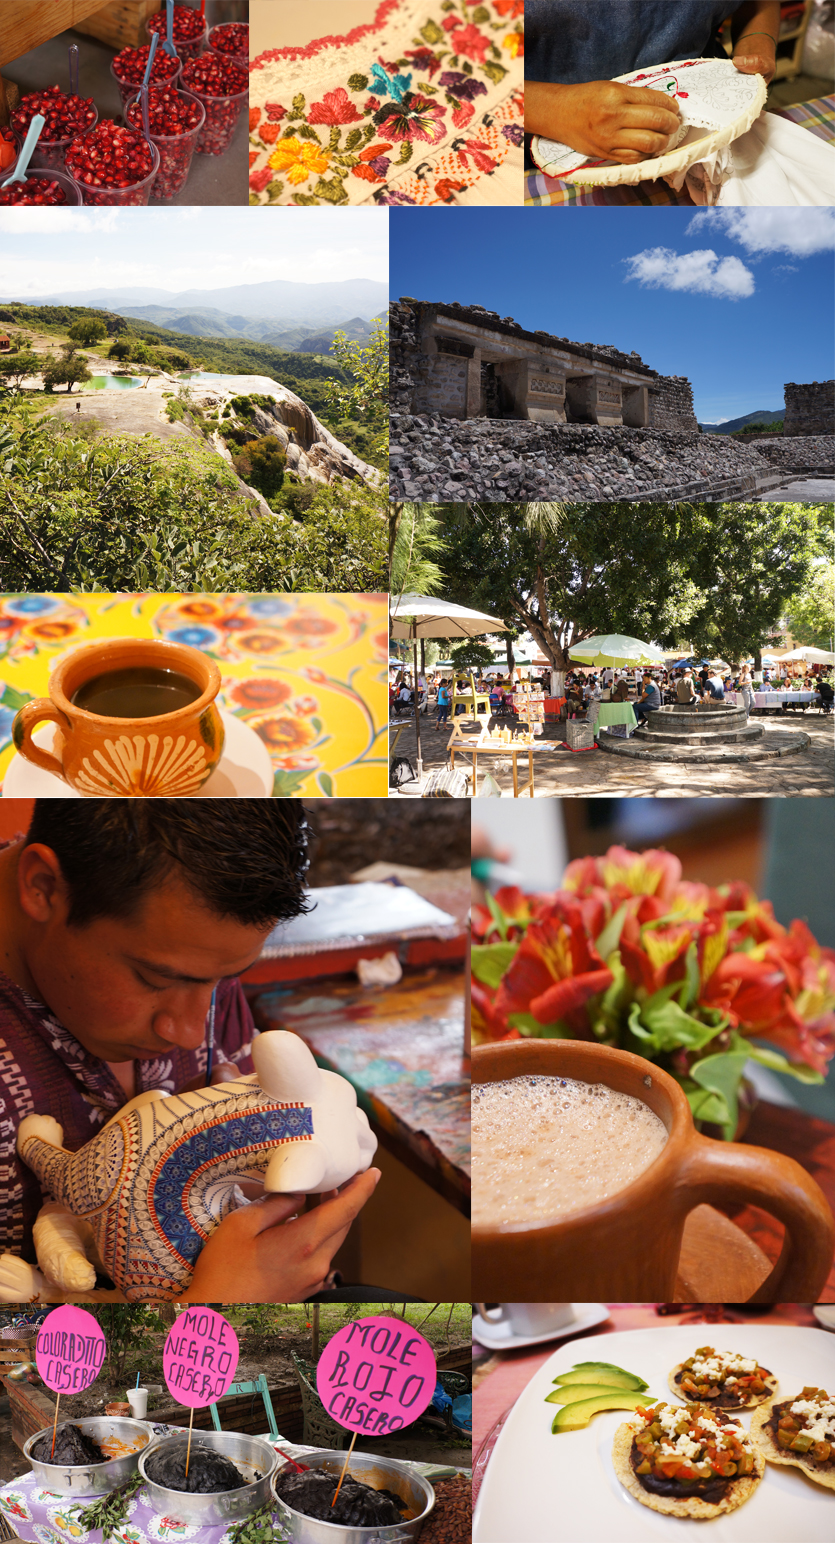 オアハカは豊かな文化と歴史あるメキシコの街コロニアル建築の街並みと先住民族による伝統的な生活が特徴。